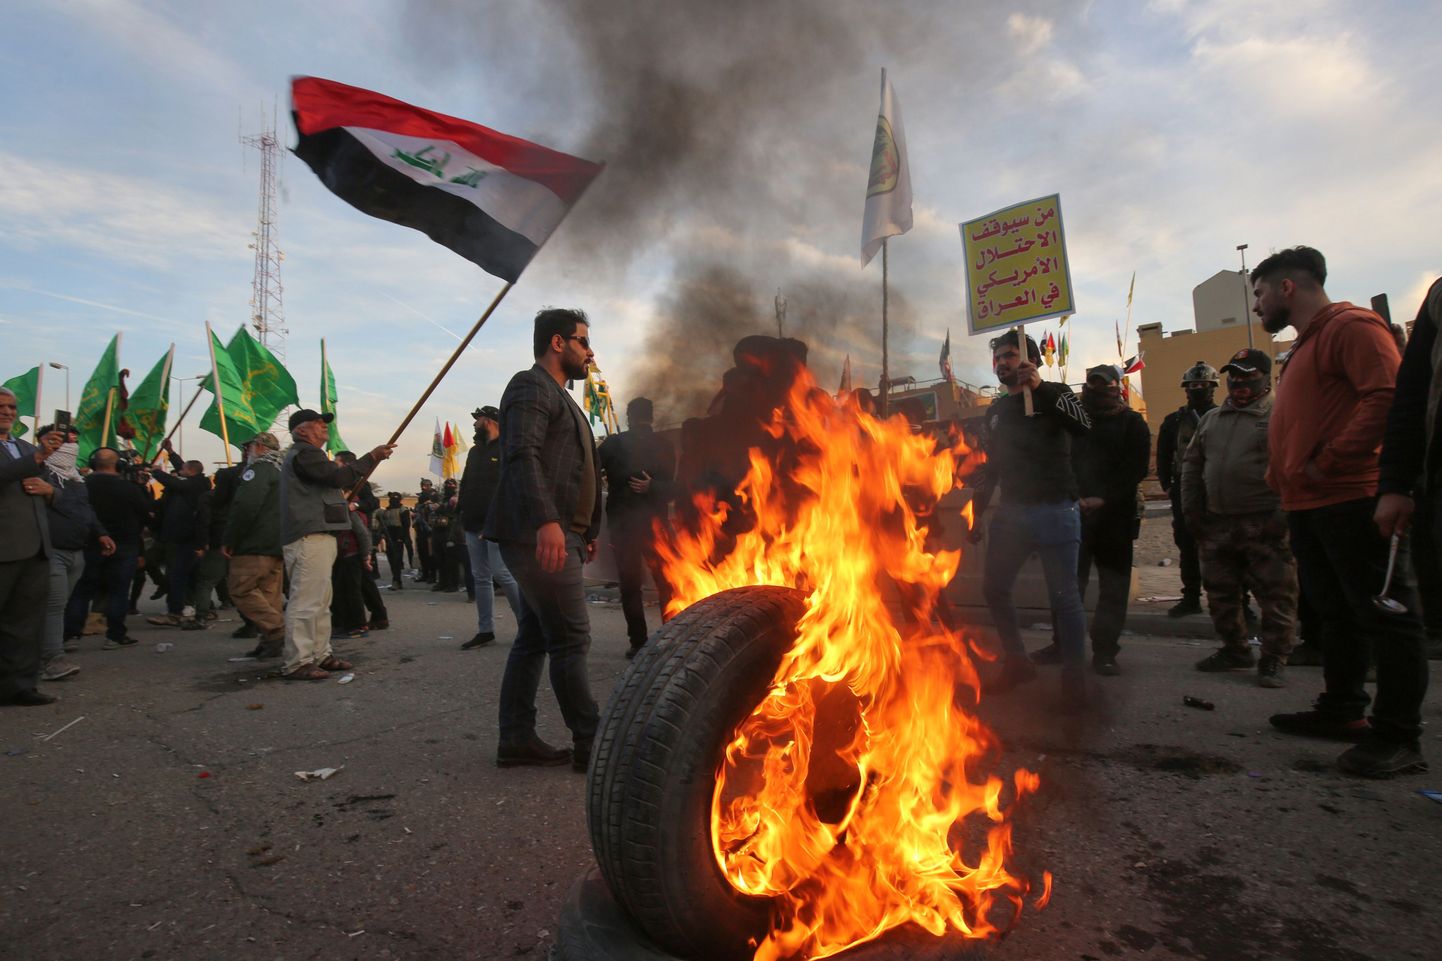 Сторонники "Аль-Хашд аш-Шаби" у посольства США в Багдаде 1.01.2020.